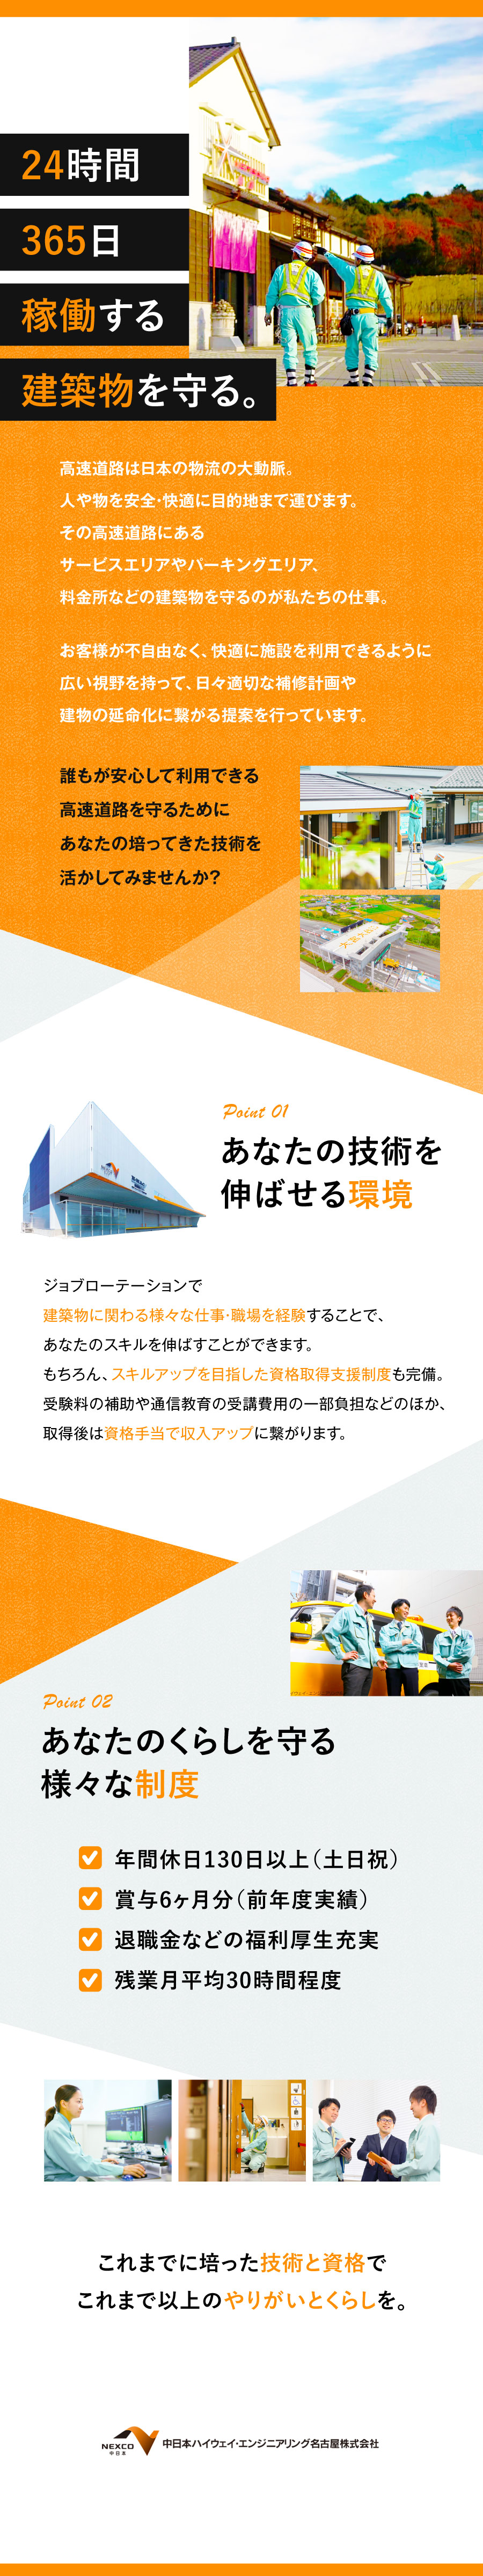 中日本ハイウェイ・エンジニアリング名古屋株式会社からのメッセージ